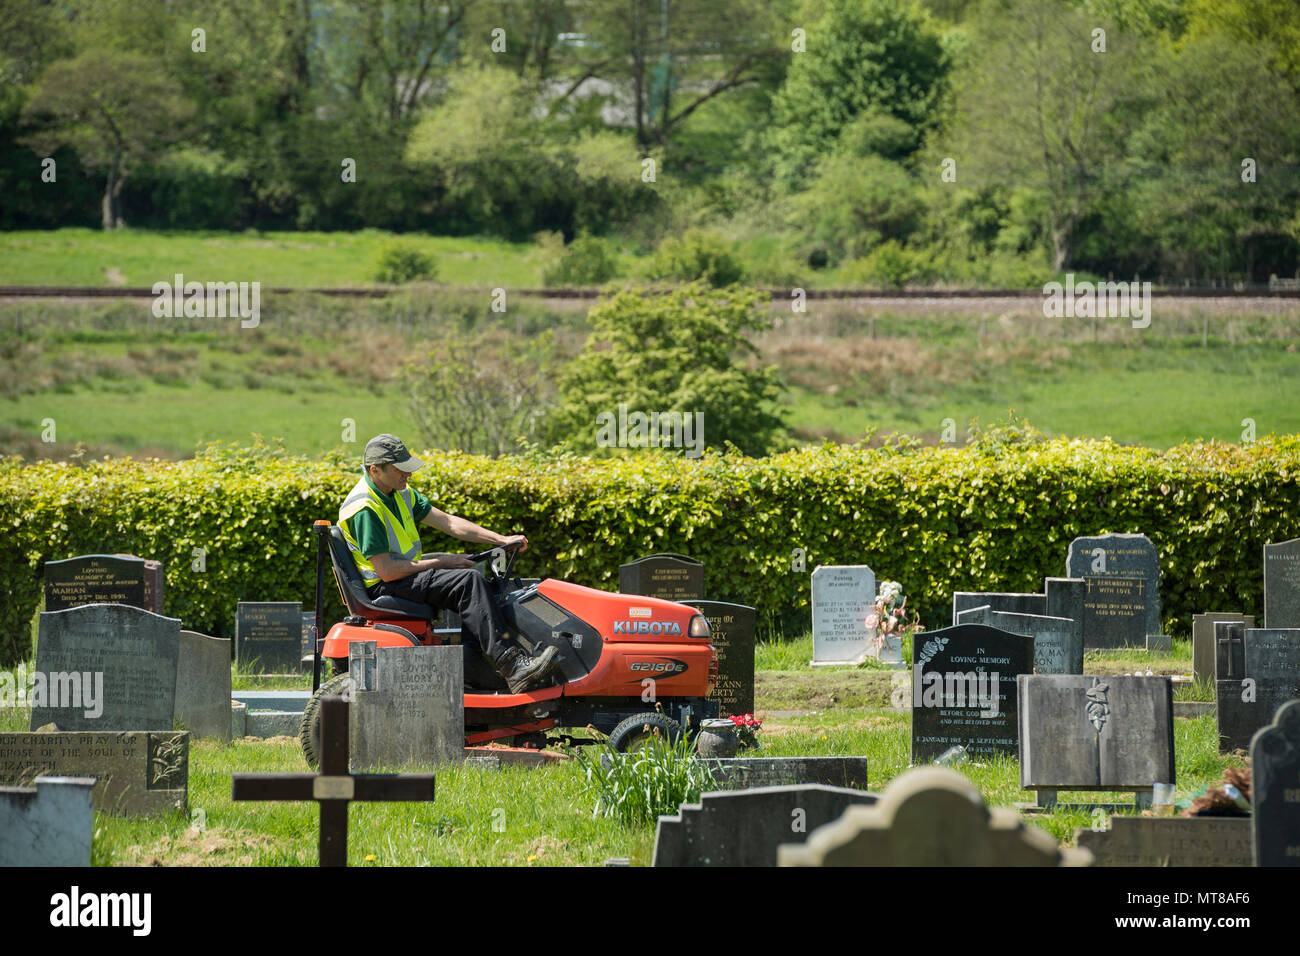 Mann bei der Arbeit (empoyee der lokalen Rat) sitzt auf Fahrt auf Rasenmäher & schneidet Gras zwischen den Grabsteinen - guiseley Friedhof, West Yorkshire, England, UK. Stockfoto